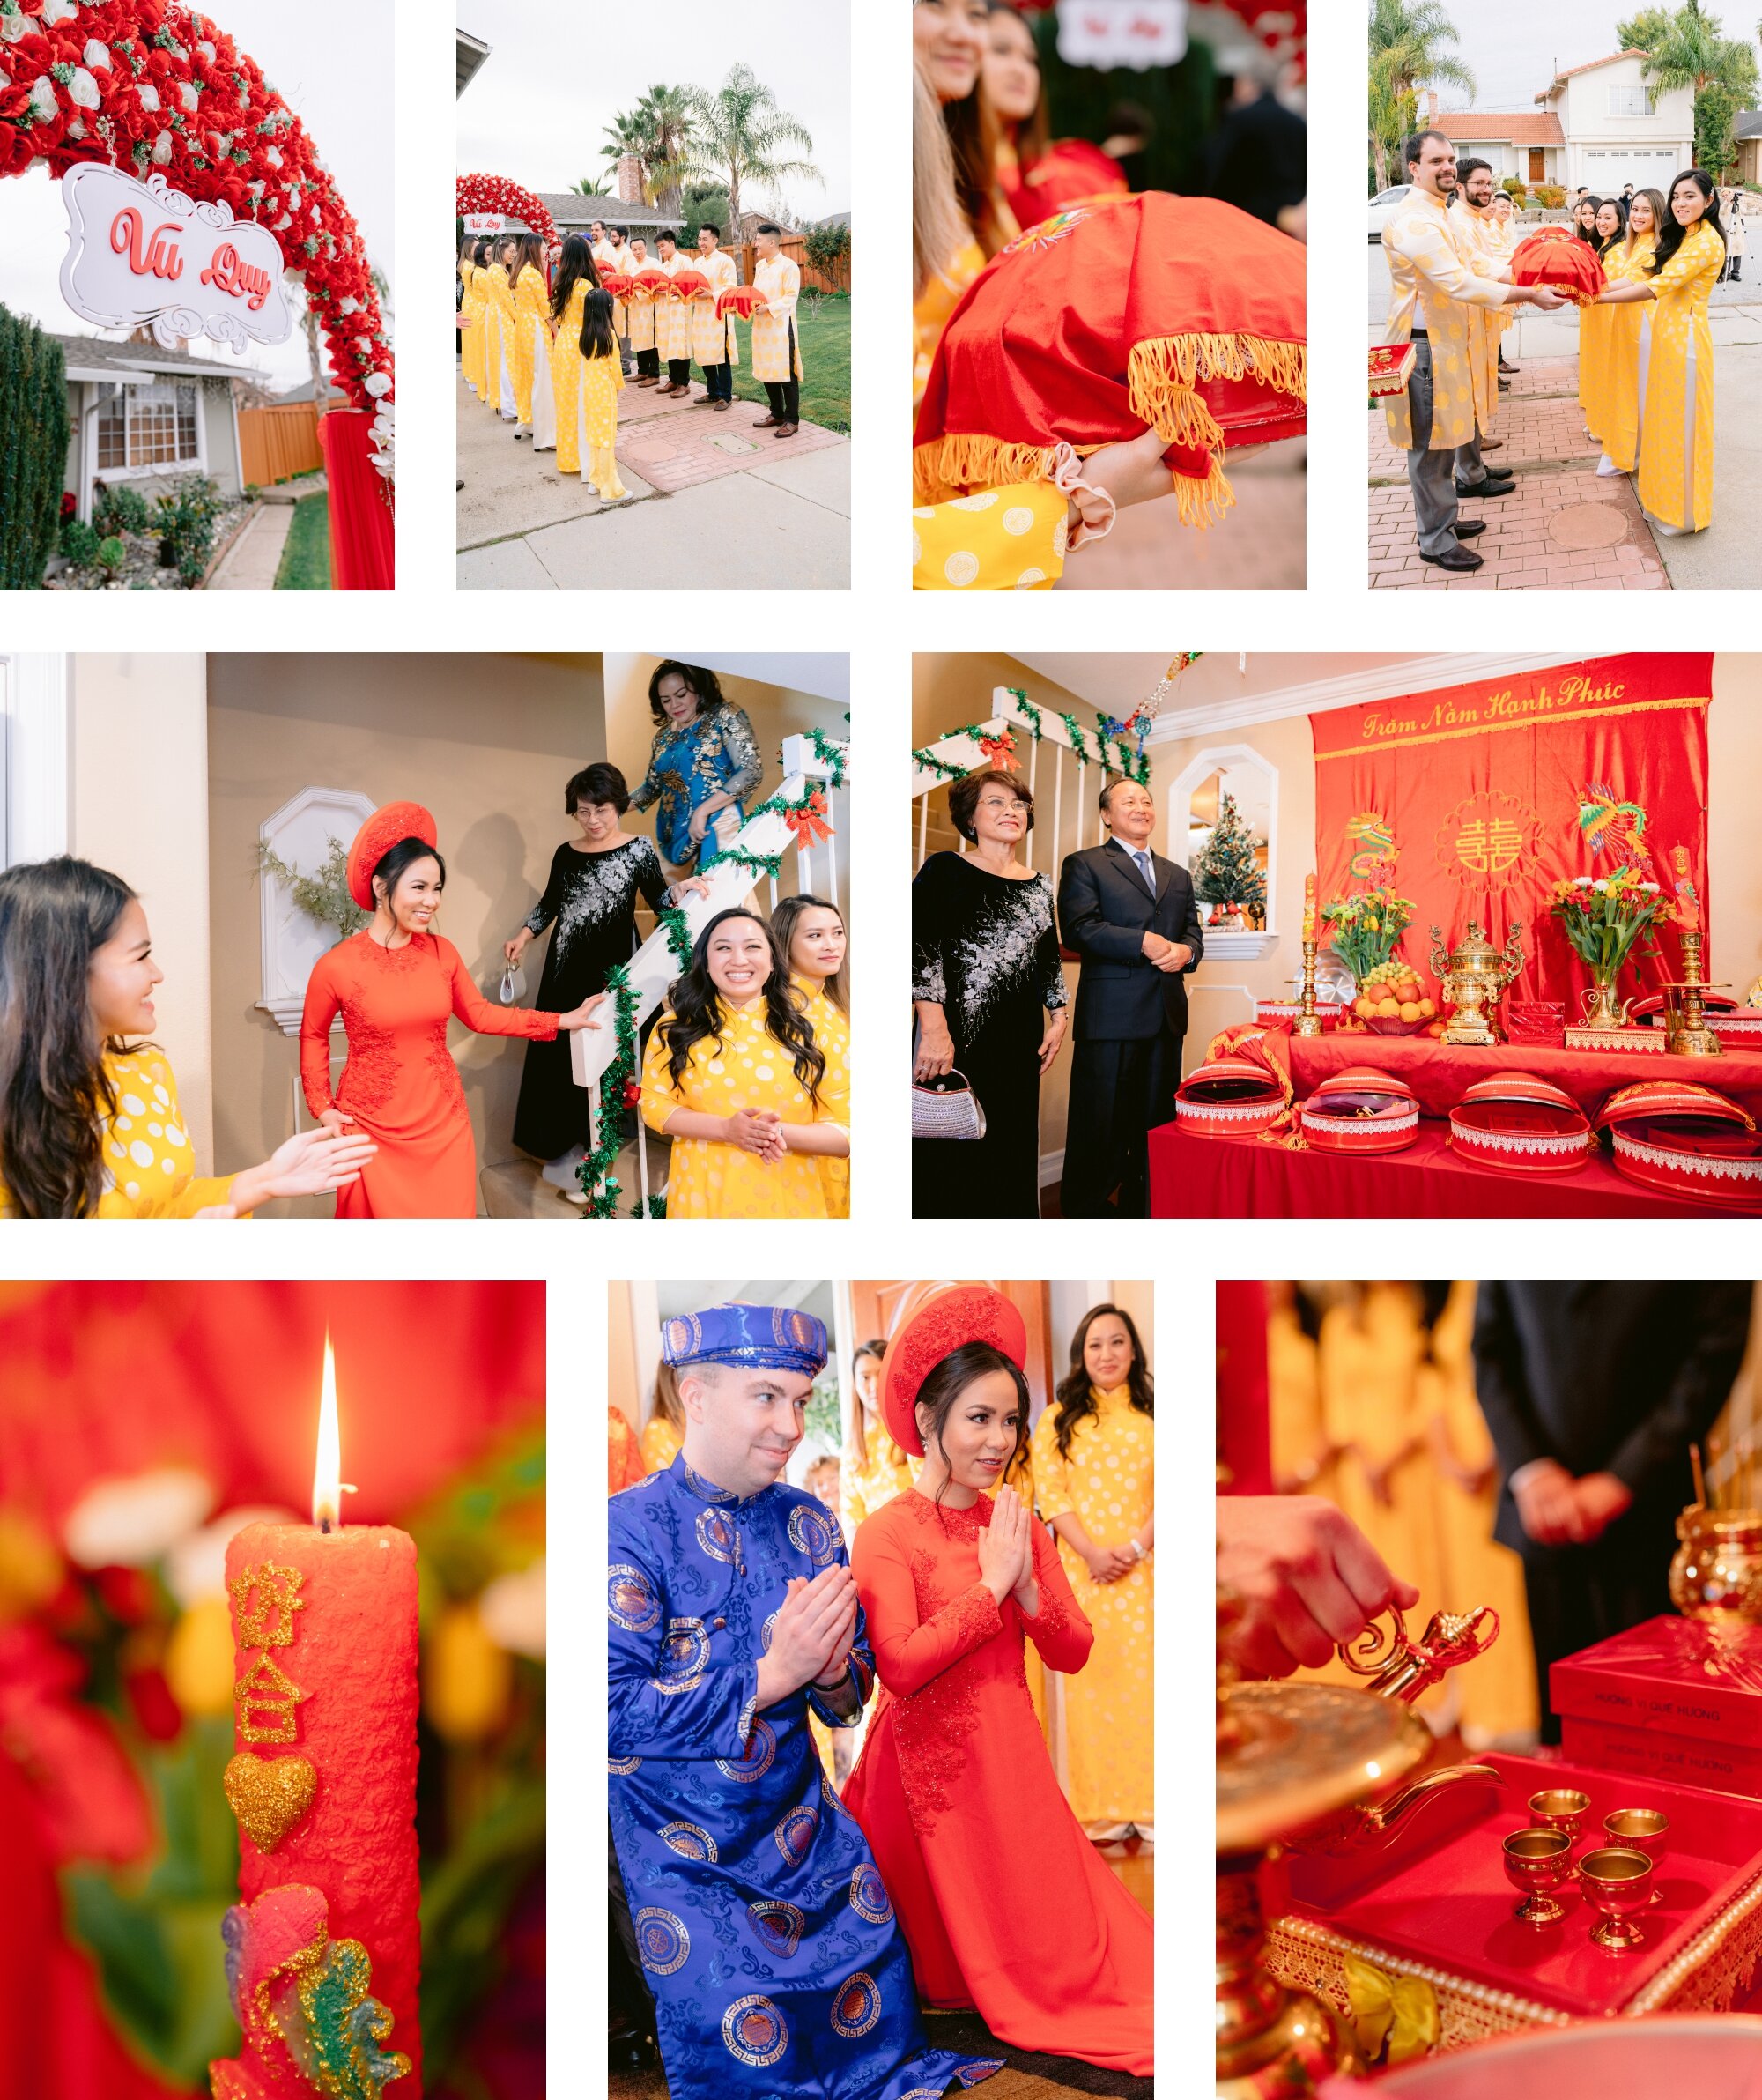 https://images.squarespace-cdn.com/content/v1/5a8486e8aeb625a6a8e89134/1585344183774-LXQNRU4GG9O72NSRZLJV/Vietnamese-Tea-Ceremony-Wedding-San-Jose+%283%29.jpg